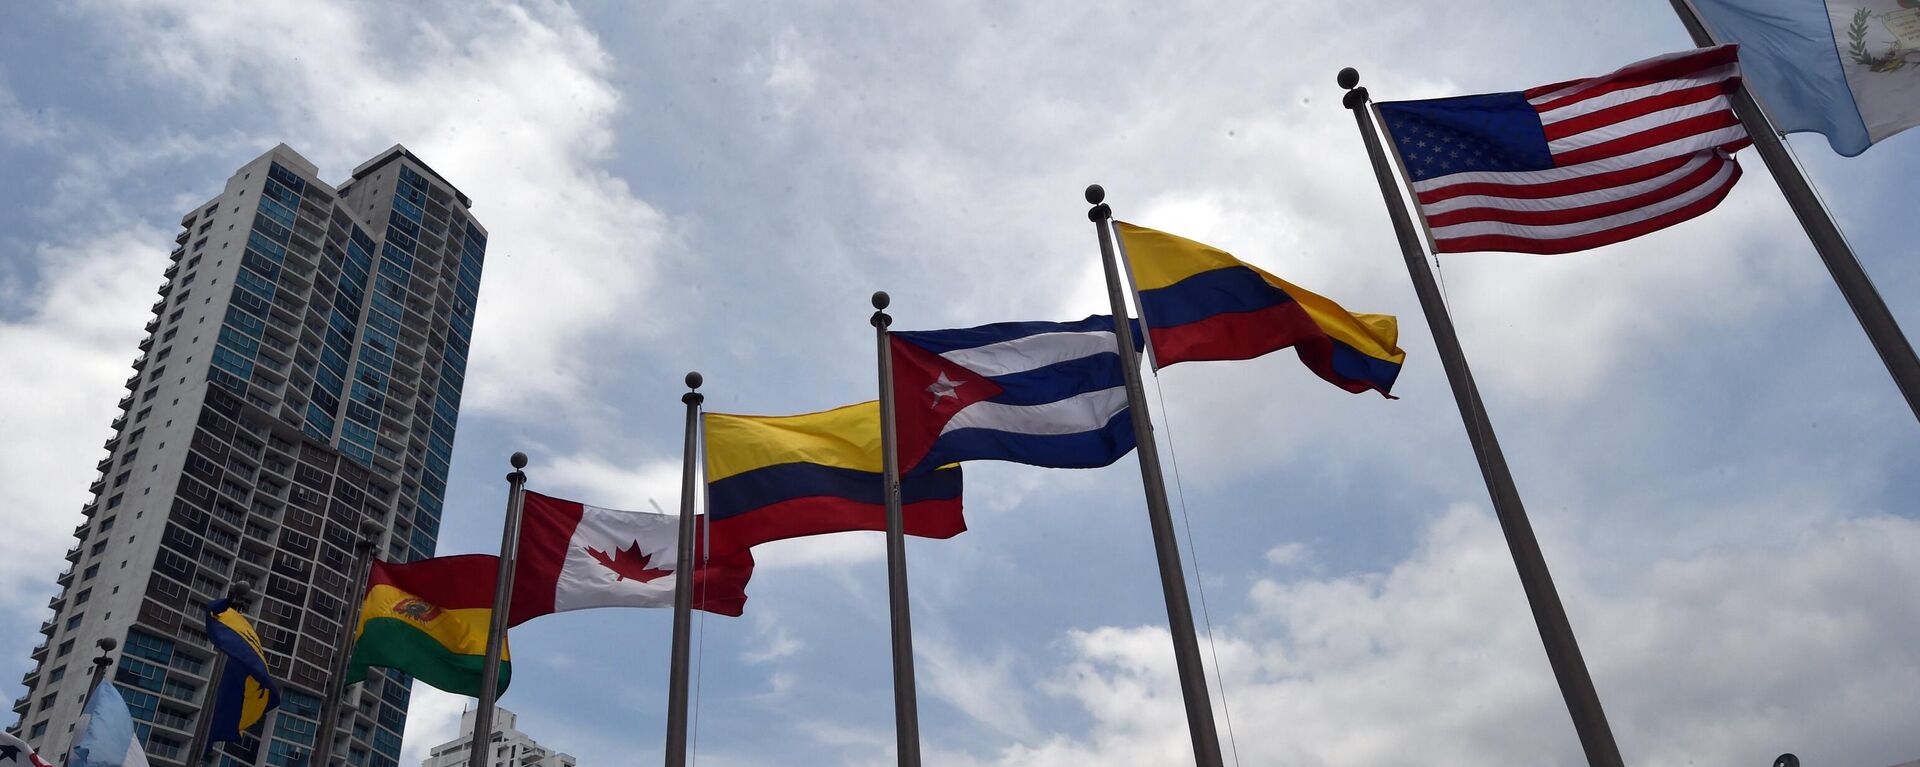 Cờ của các nước tham gia Hội nghị thượng đỉnh châu Mỹ tại Panama vào năm 2015 - Sputnik Việt Nam, 1920, 23.05.2022